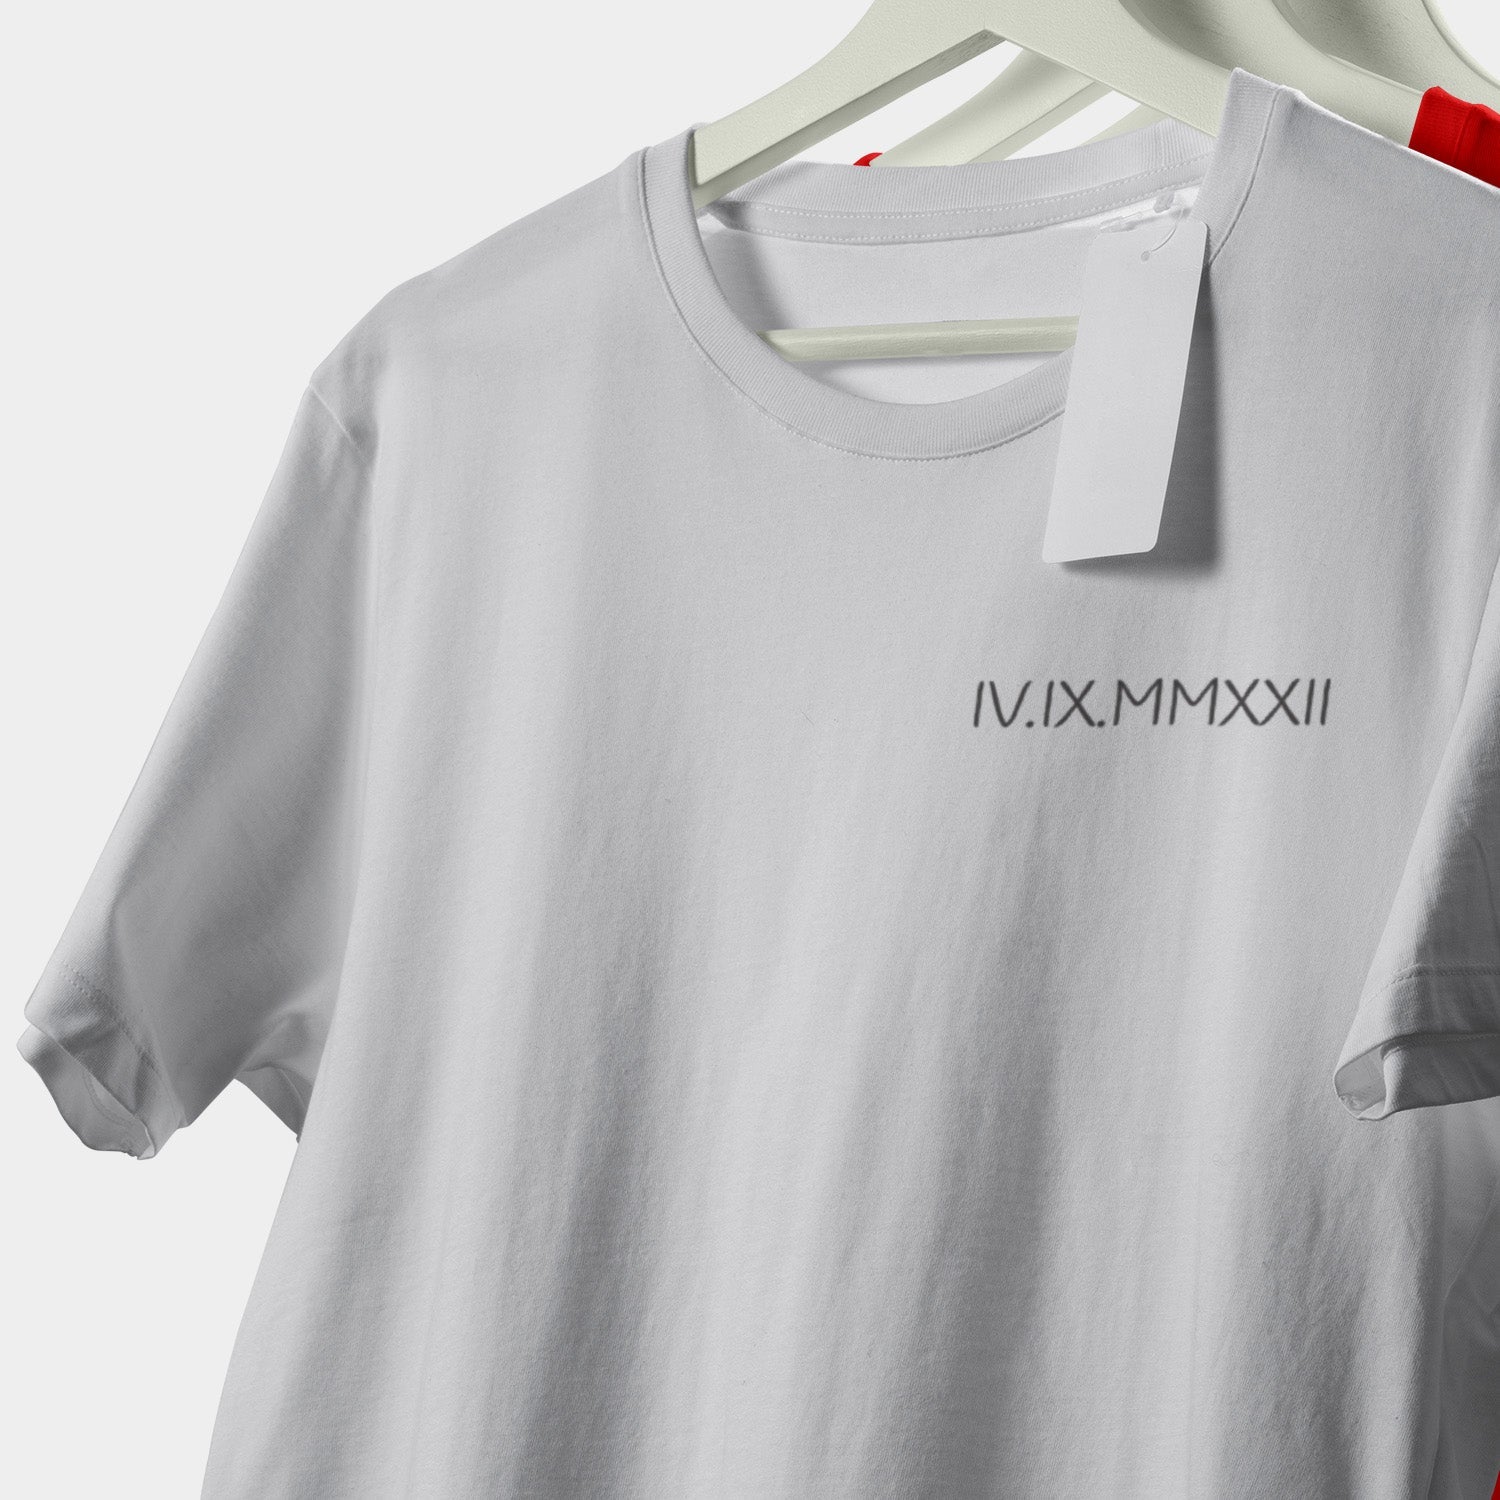 Camiseta Personalizada Bordada Con Números Romanos E Inicial